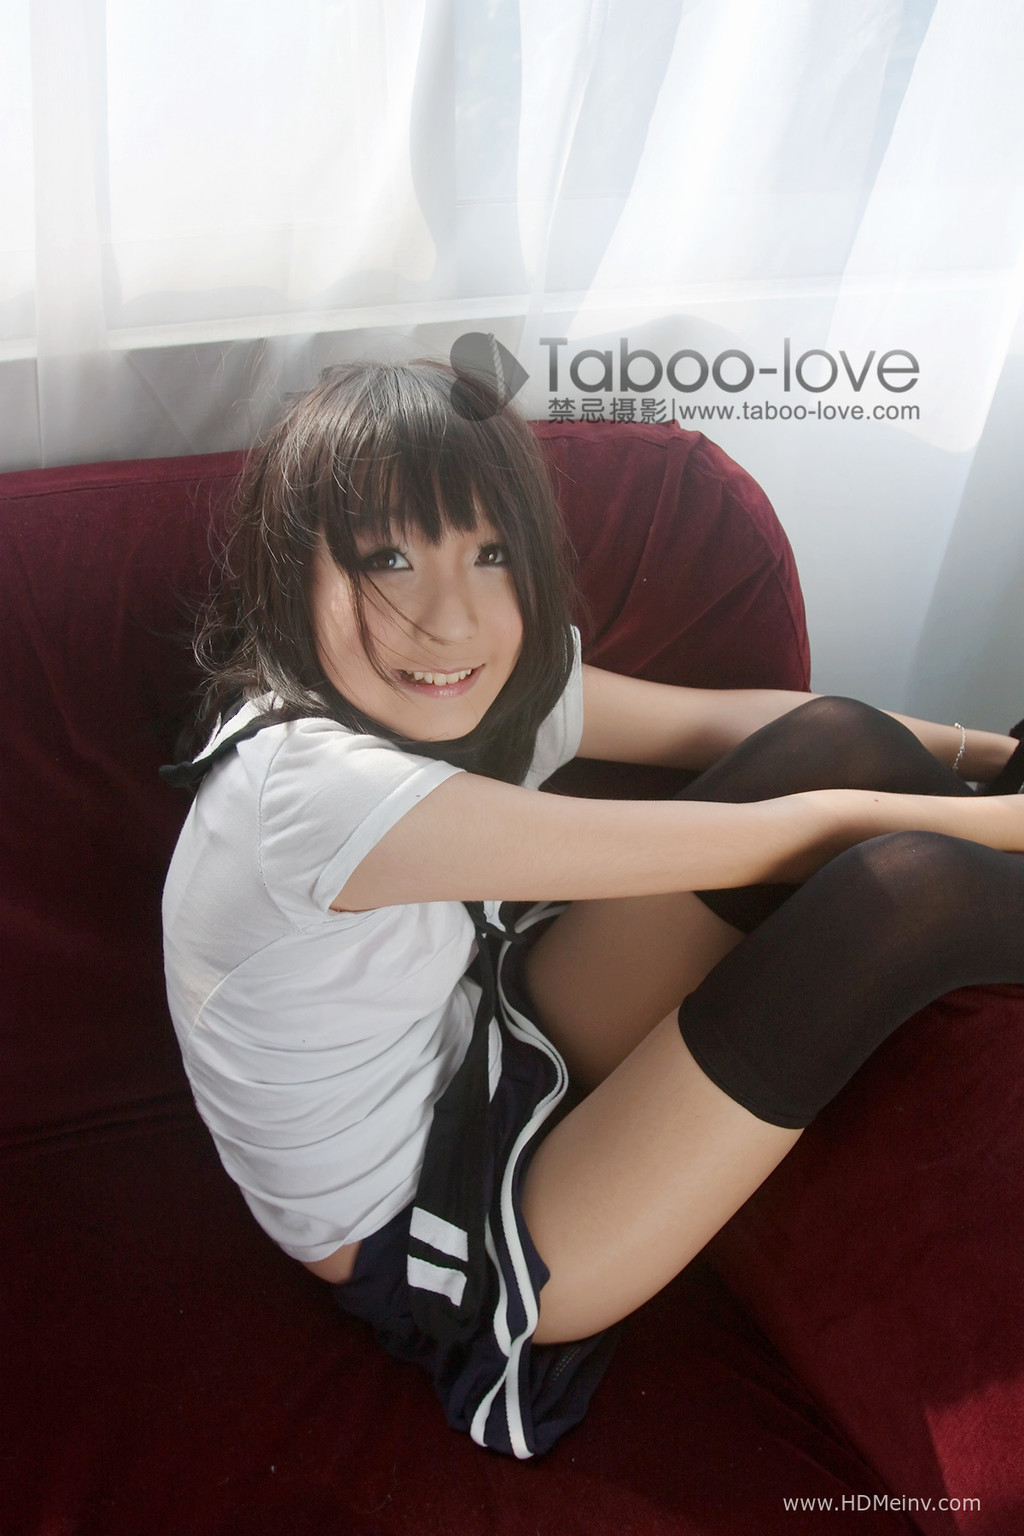 禁忌摄影Taboo-Love套图第004期